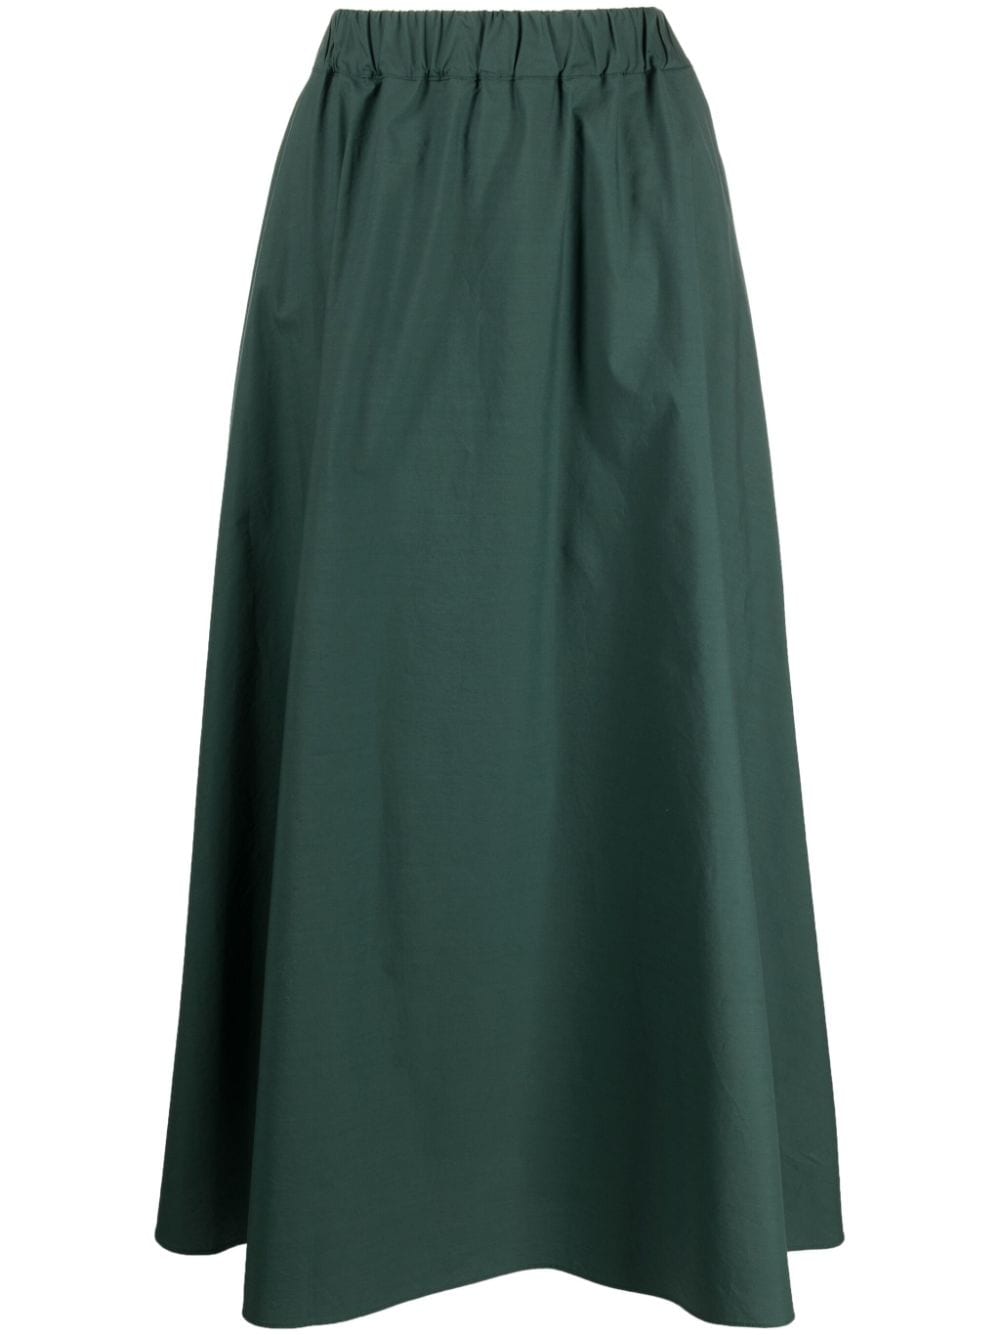 P.A.R.O.S.H. high-waisted cotton maxi skirt - Green von P.A.R.O.S.H.